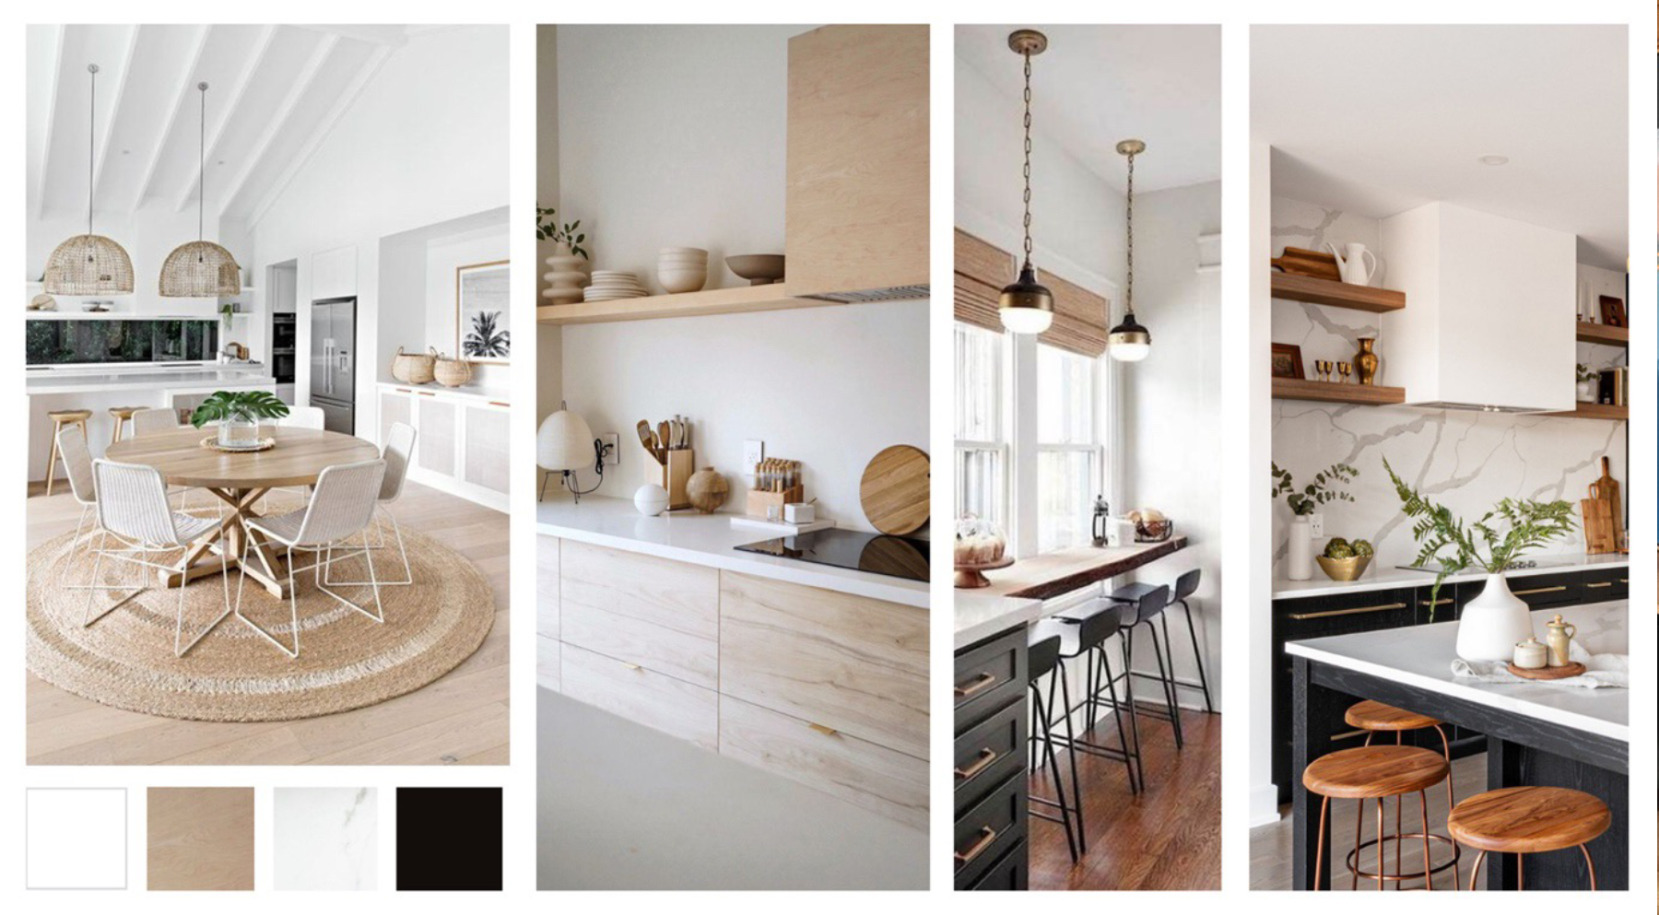 Un collage présentant une cuisine scandinave et une cuisine contemporaine conçues à partir de la même palette de couleurs neutres.